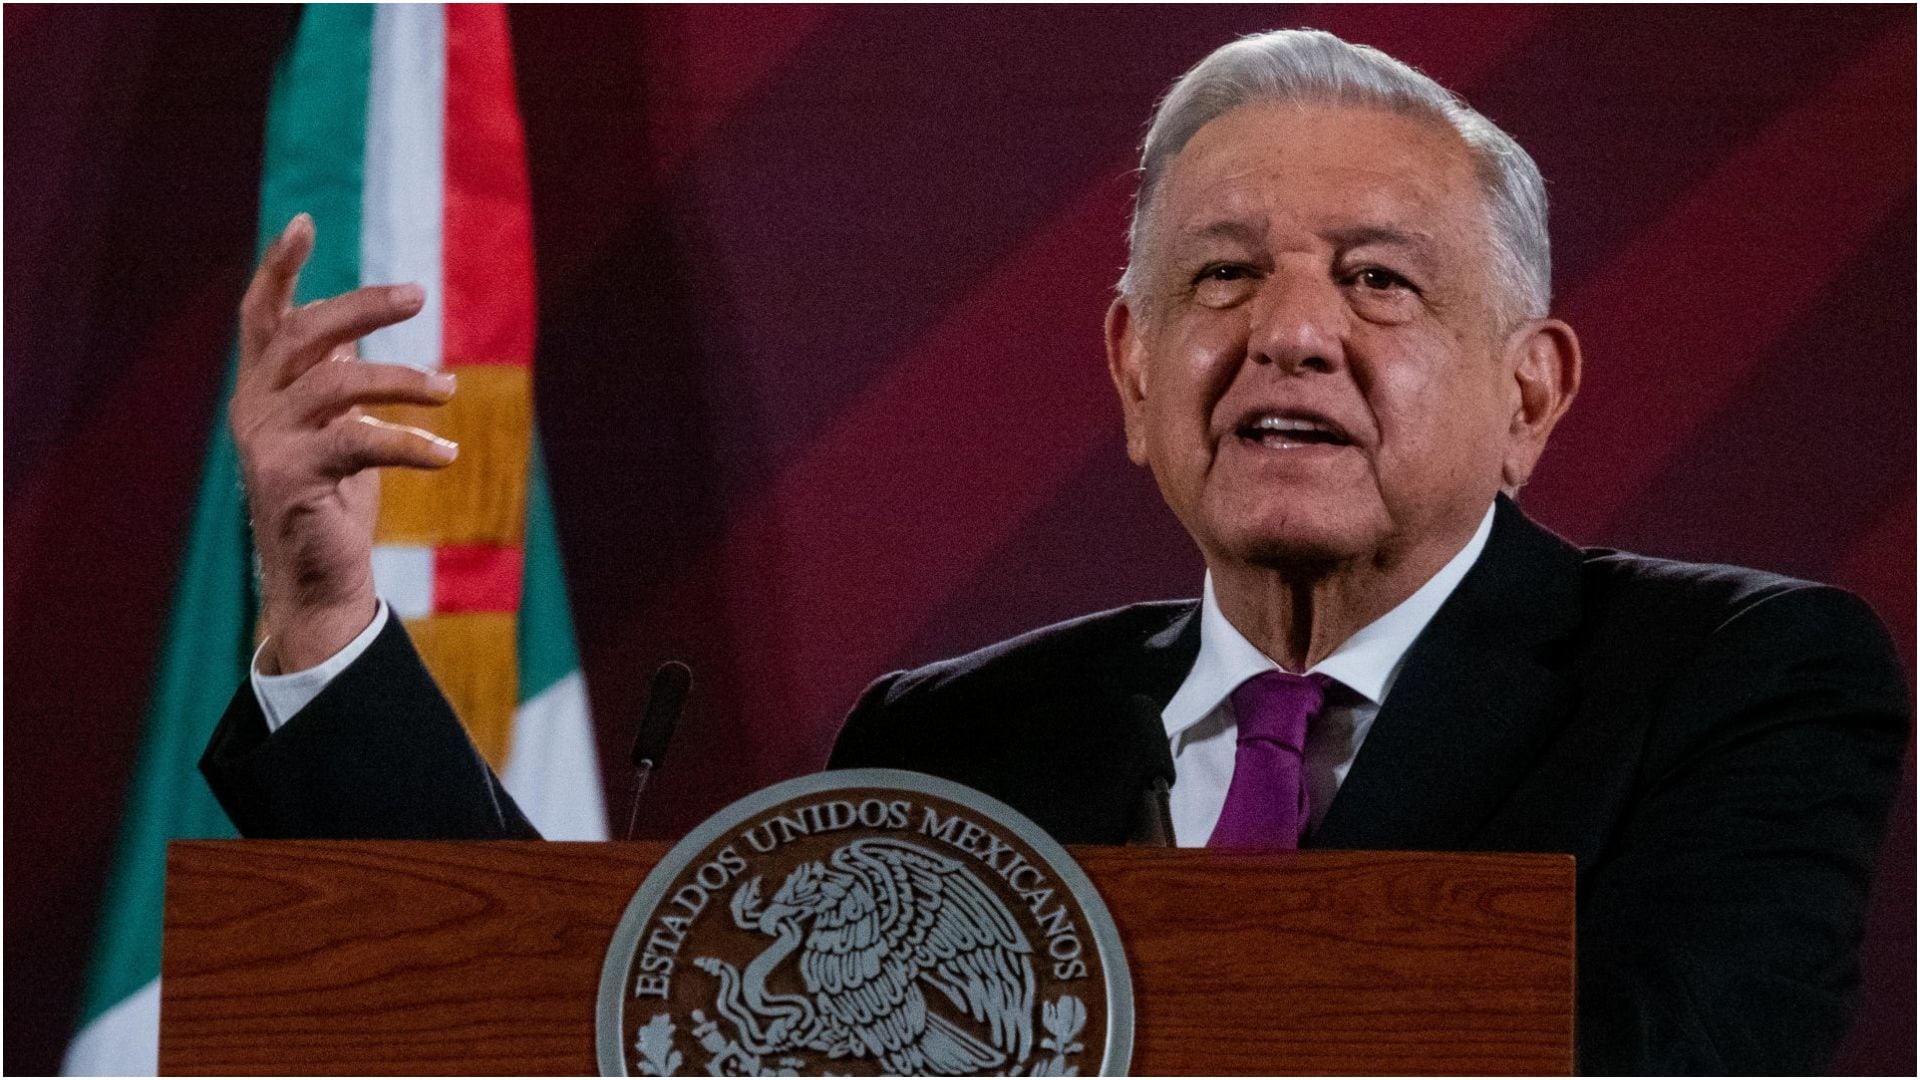 El presidente mexicano fue acusado de presuntamente no garantizar medicamentos para el tratamiento contra el cáncer (Cuartoscuro)